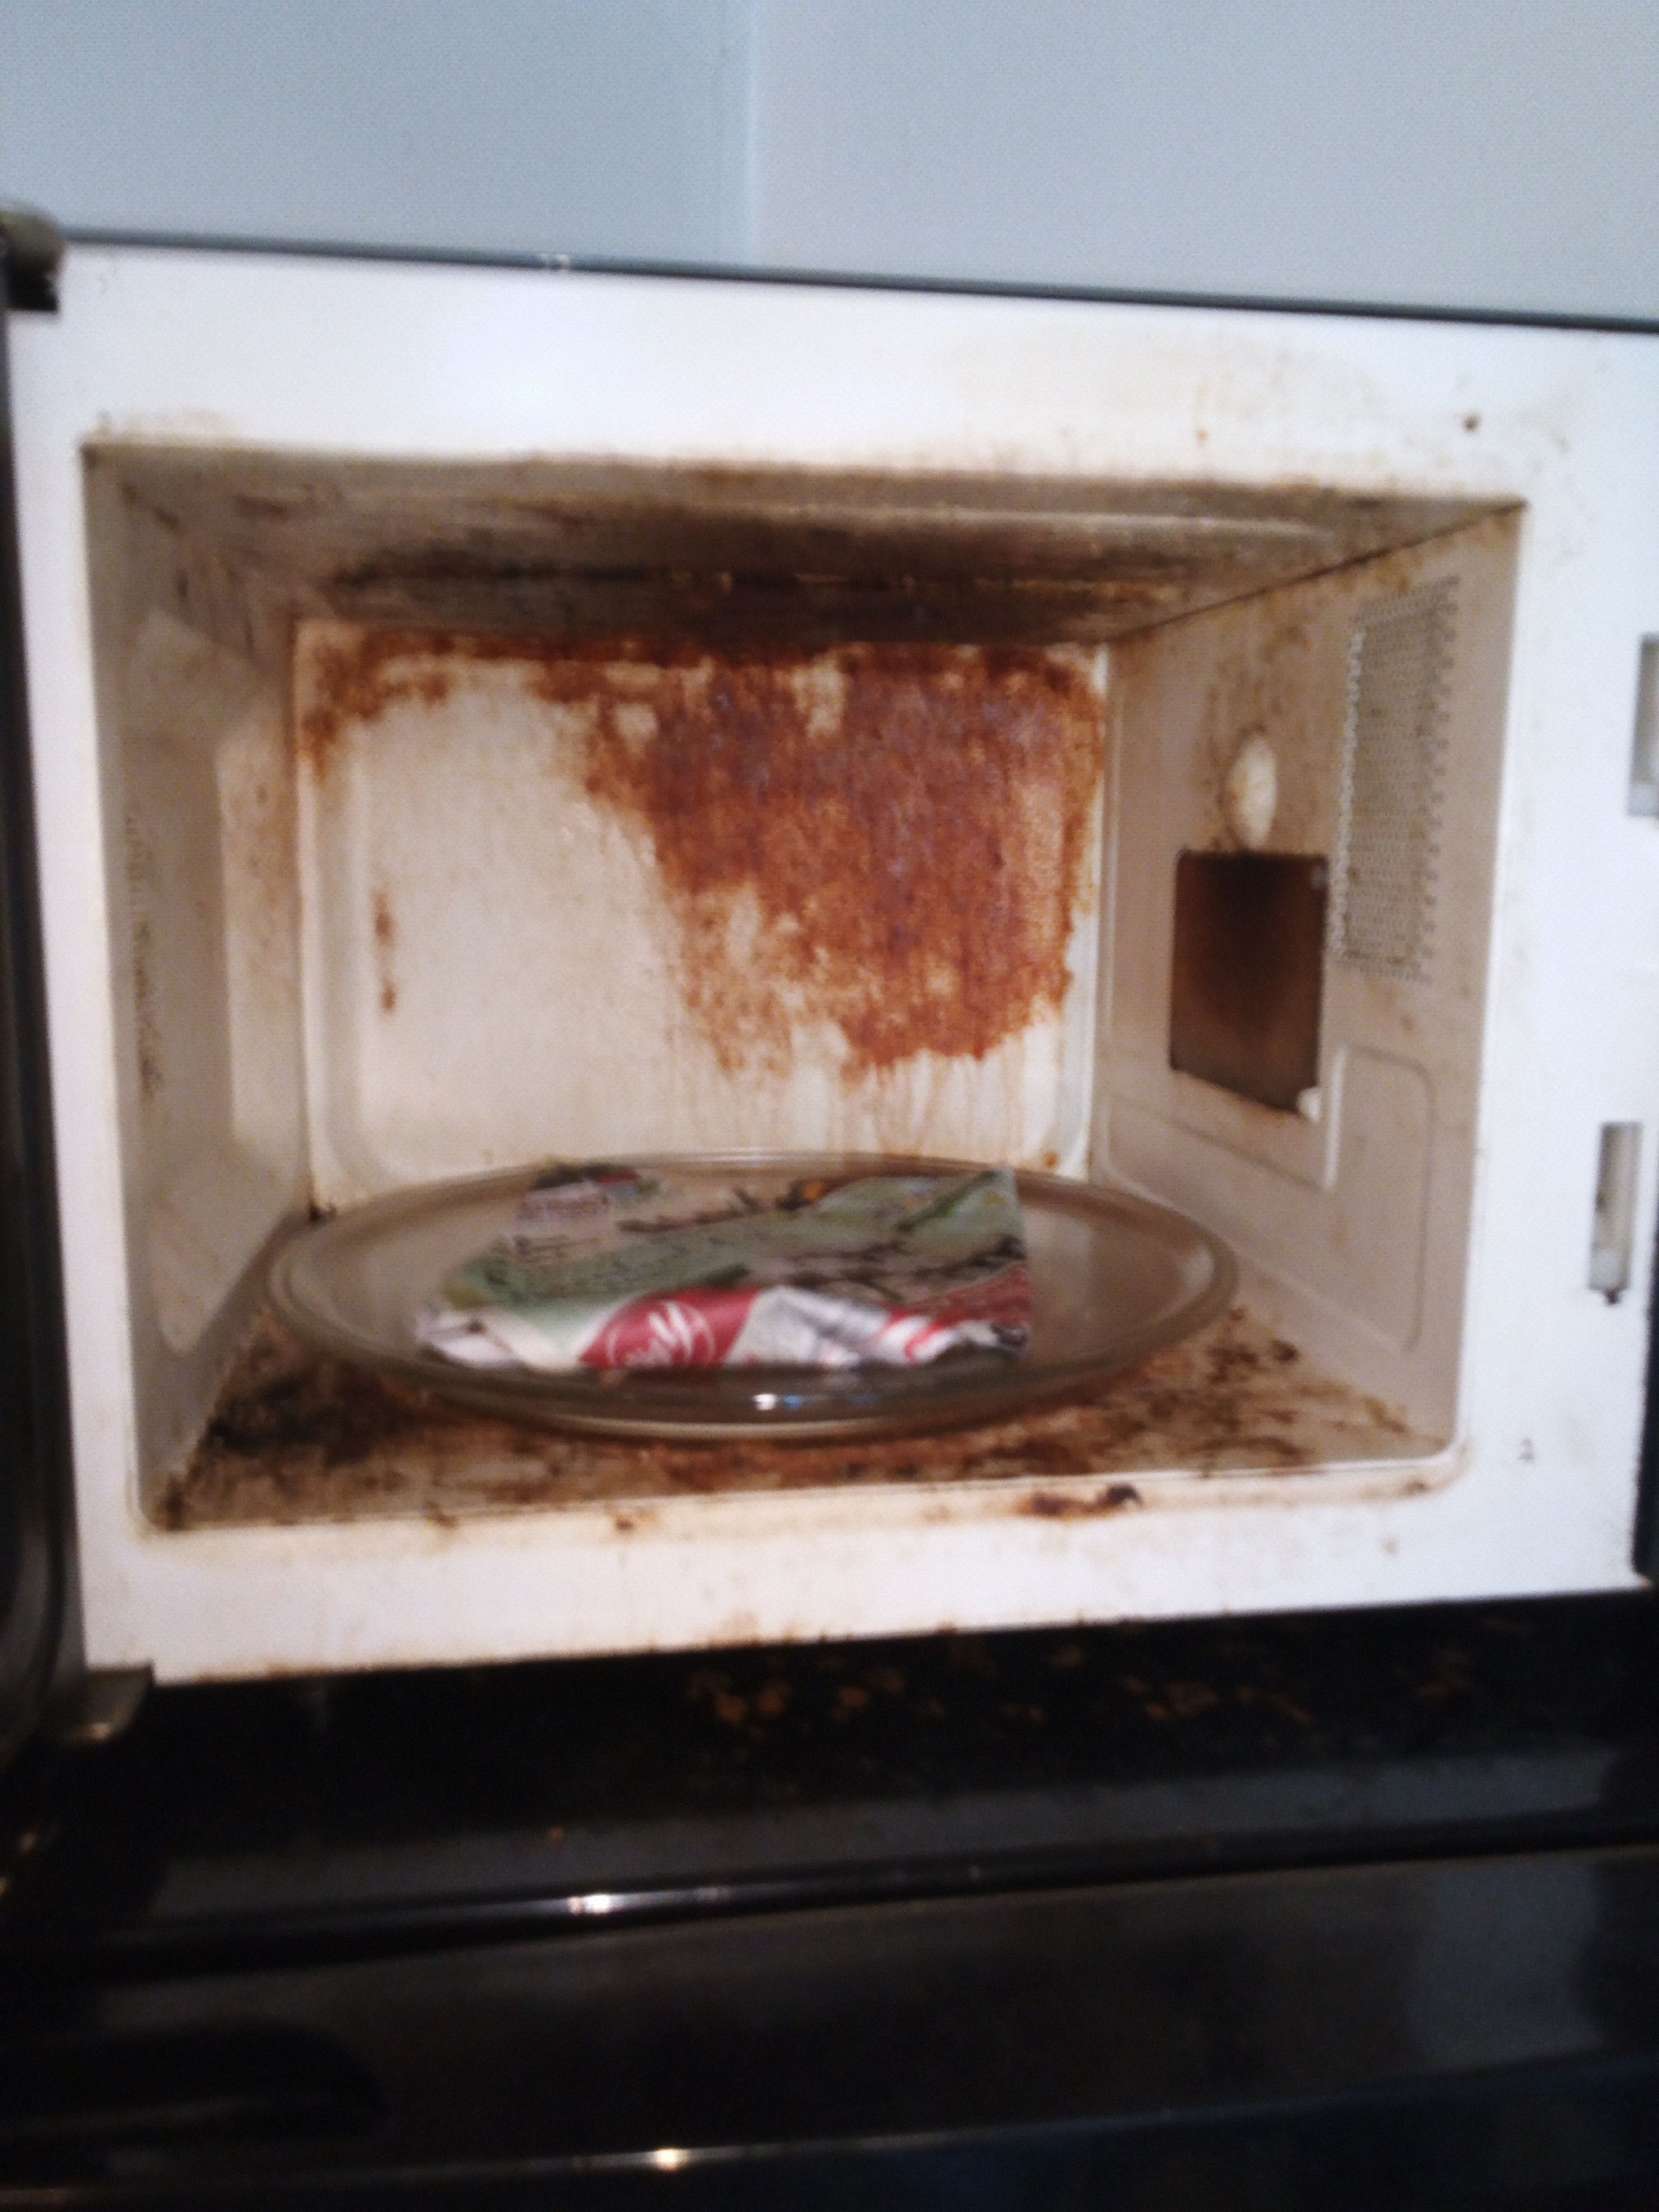 His microwave left behind